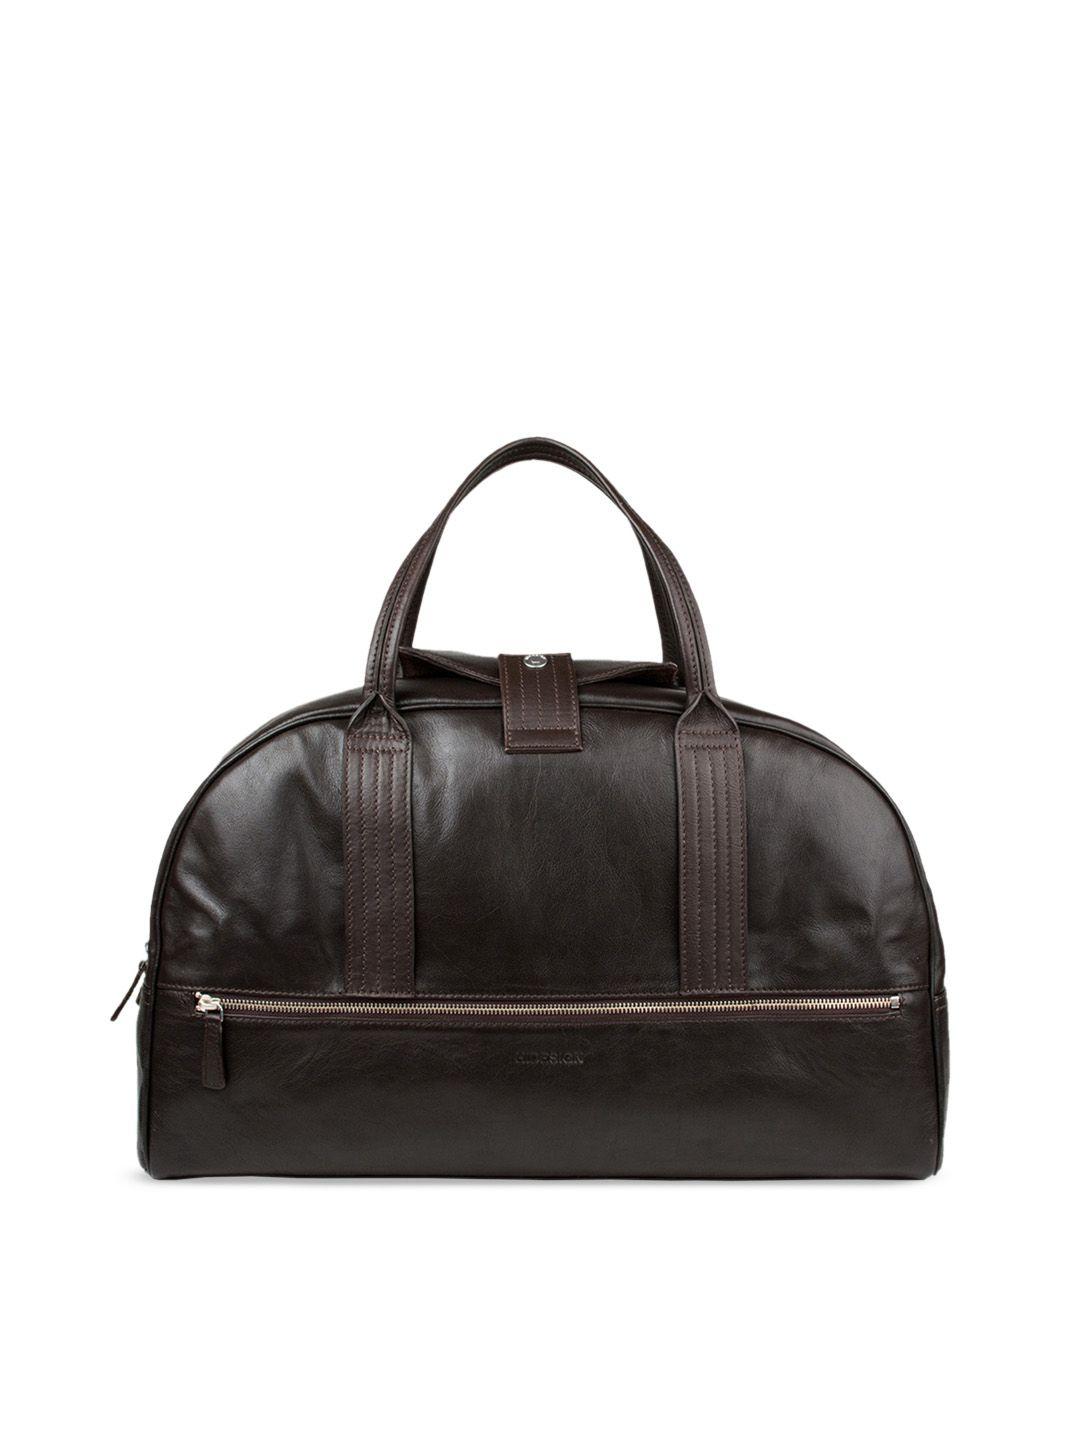 hidesign-men-brown-solid-vegas-leather-duffel-bag